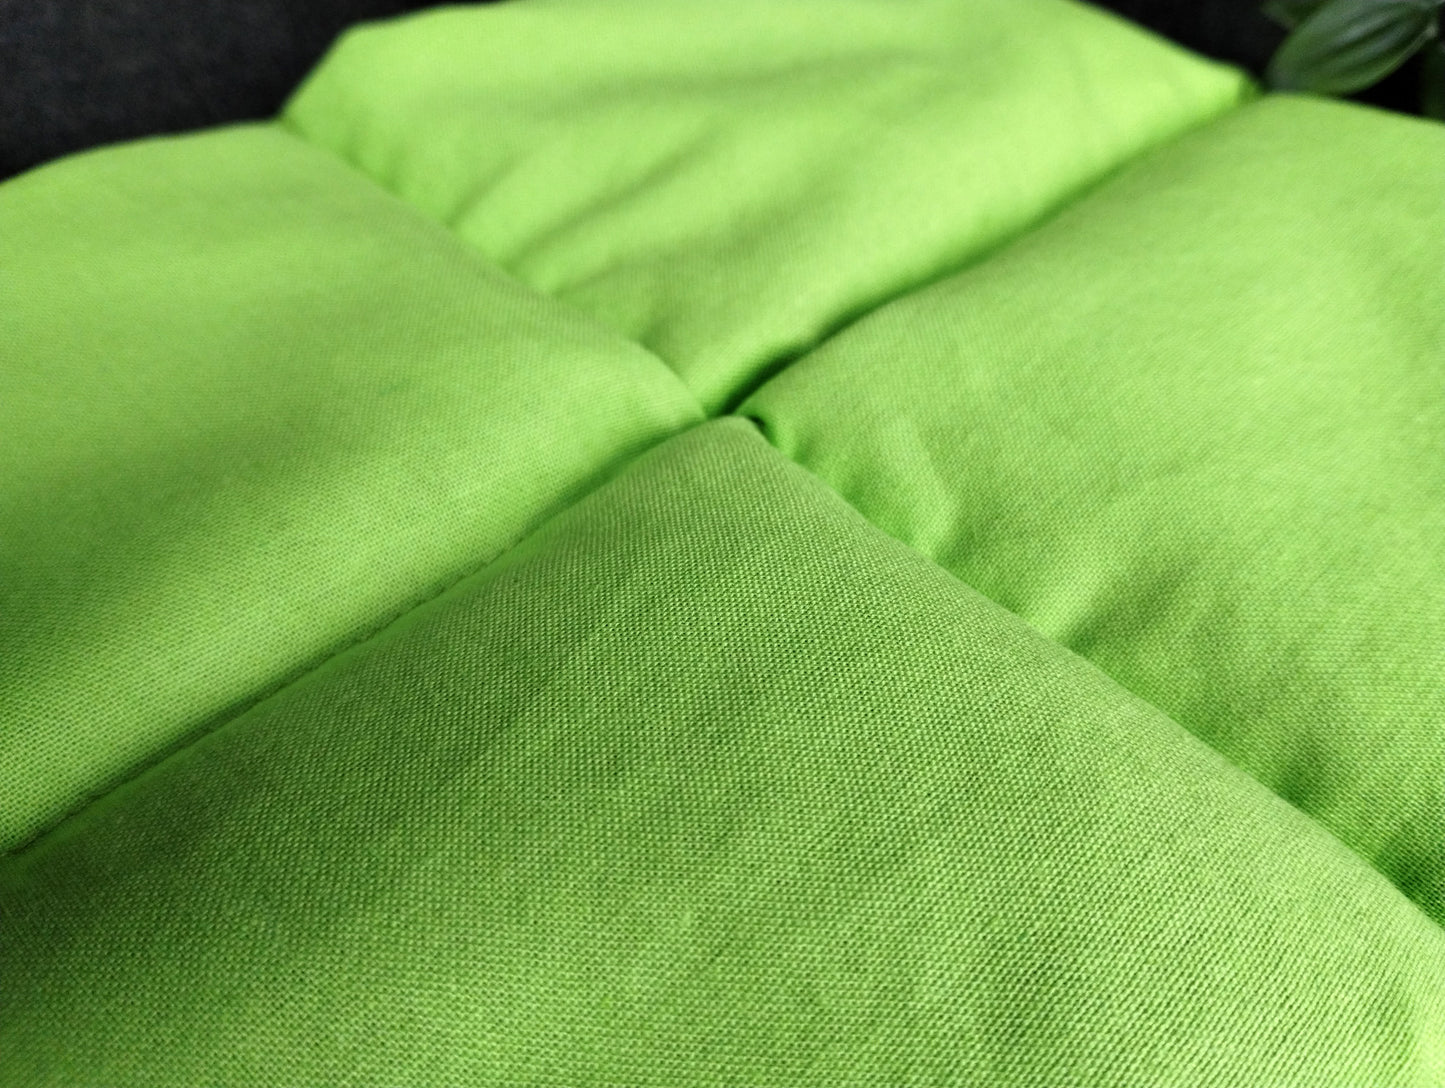 Körnerkissen in hellgrün als Beispiel für alle einfarbeigen knallig bunten Körnerkissen wie gelb, orange, rot, grün, blau, beere und lila